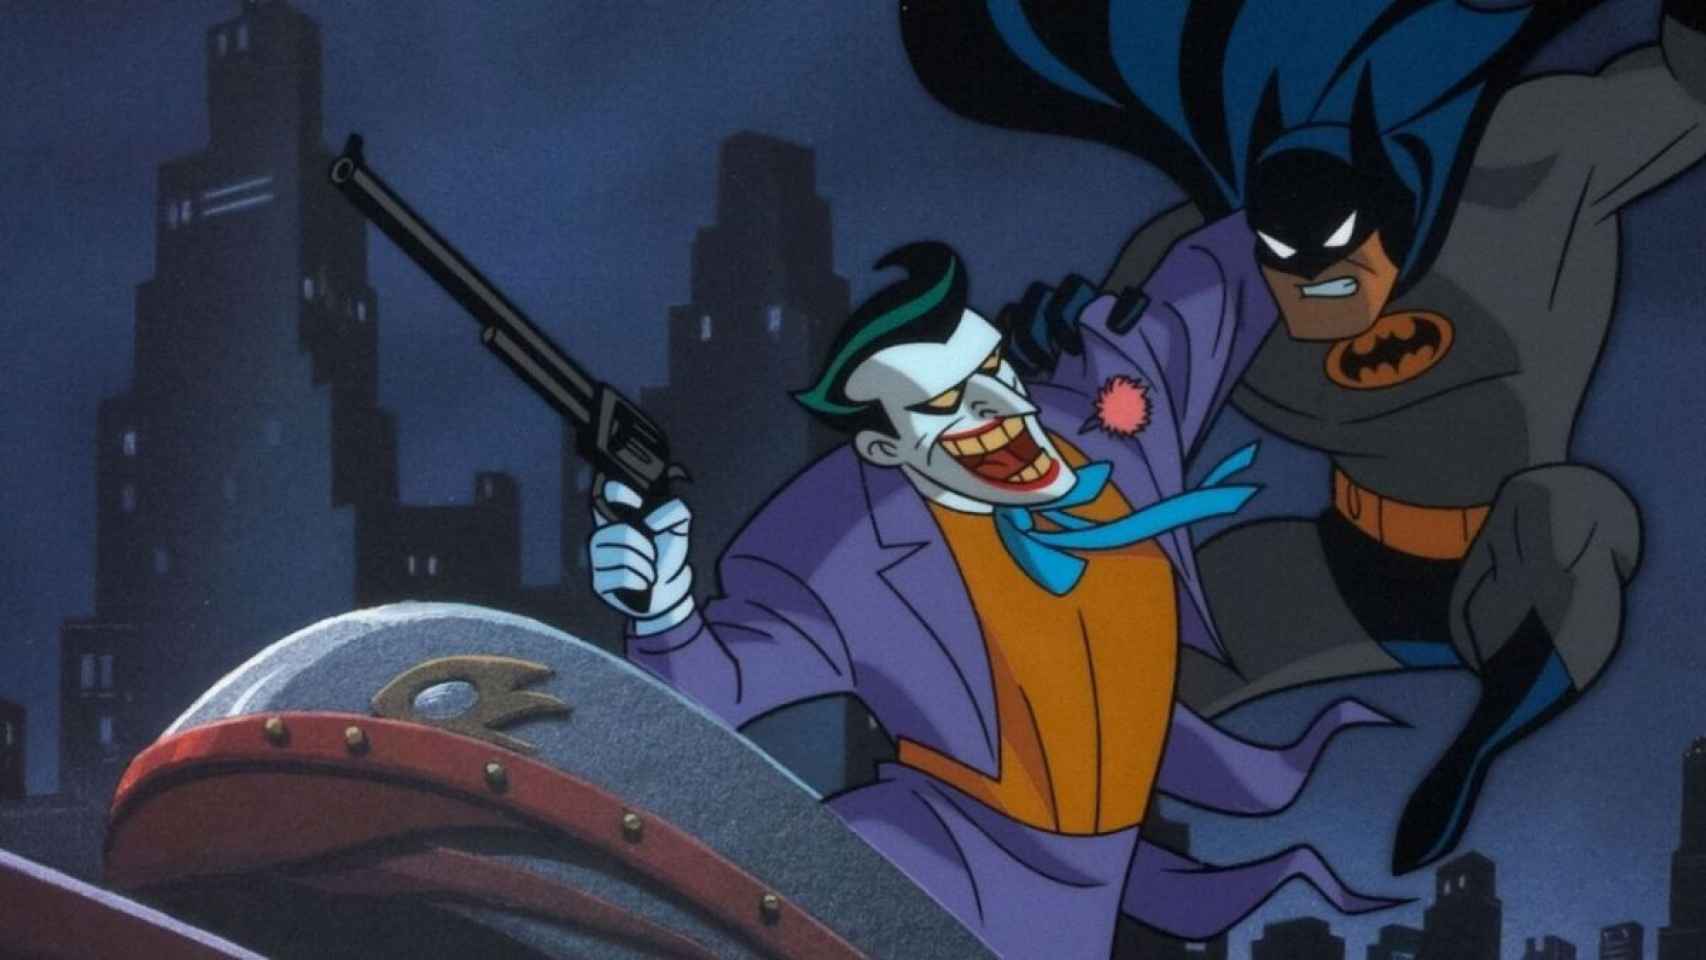 Voz de animada de Batman murió a los 66 años